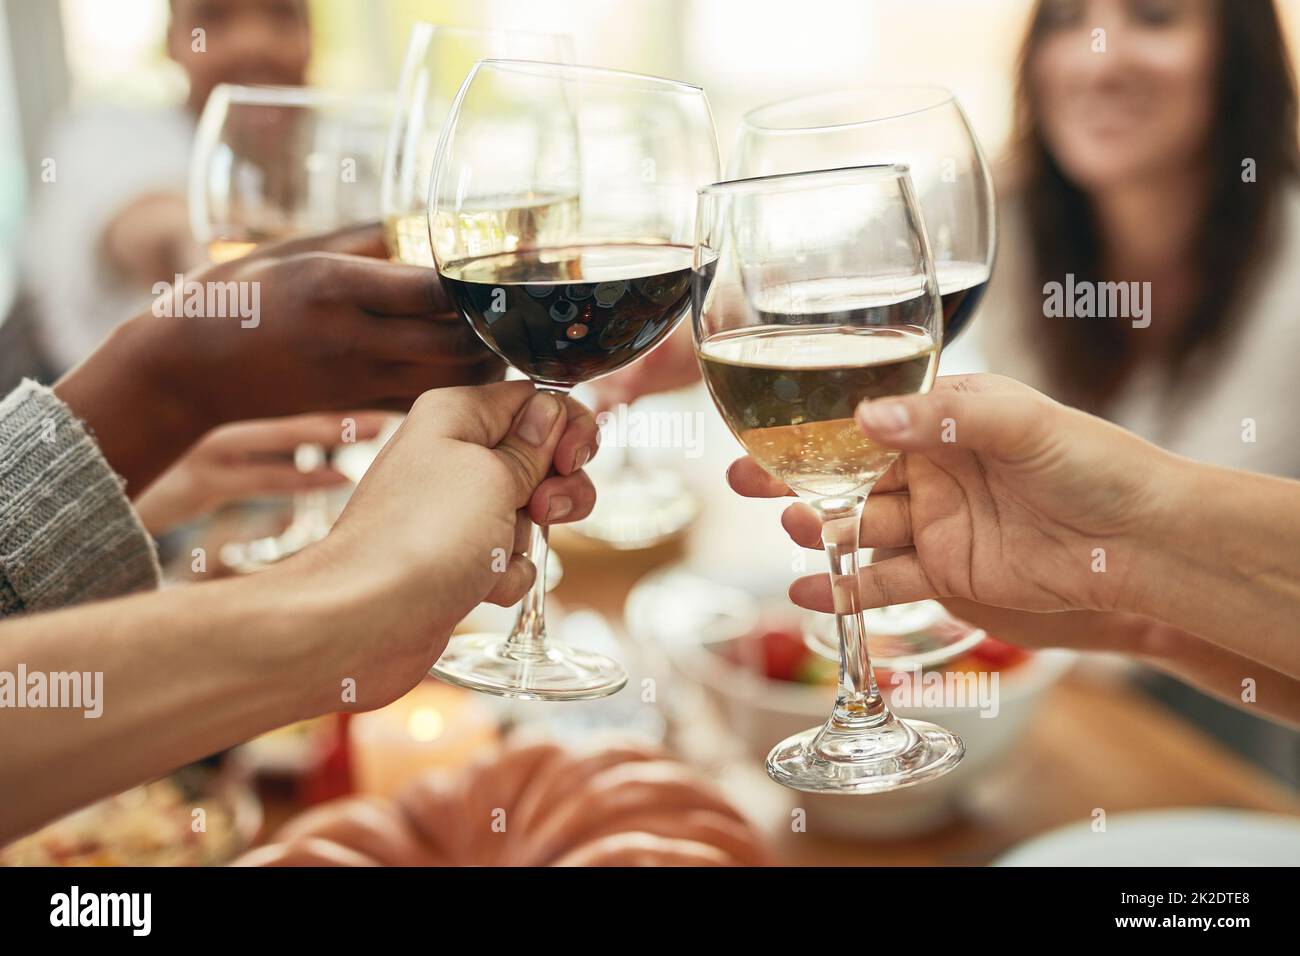 Vin un peu, rire beaucoup. Photo d'un groupe de personnes faisant un toast à une table de salle à manger. Banque D'Images